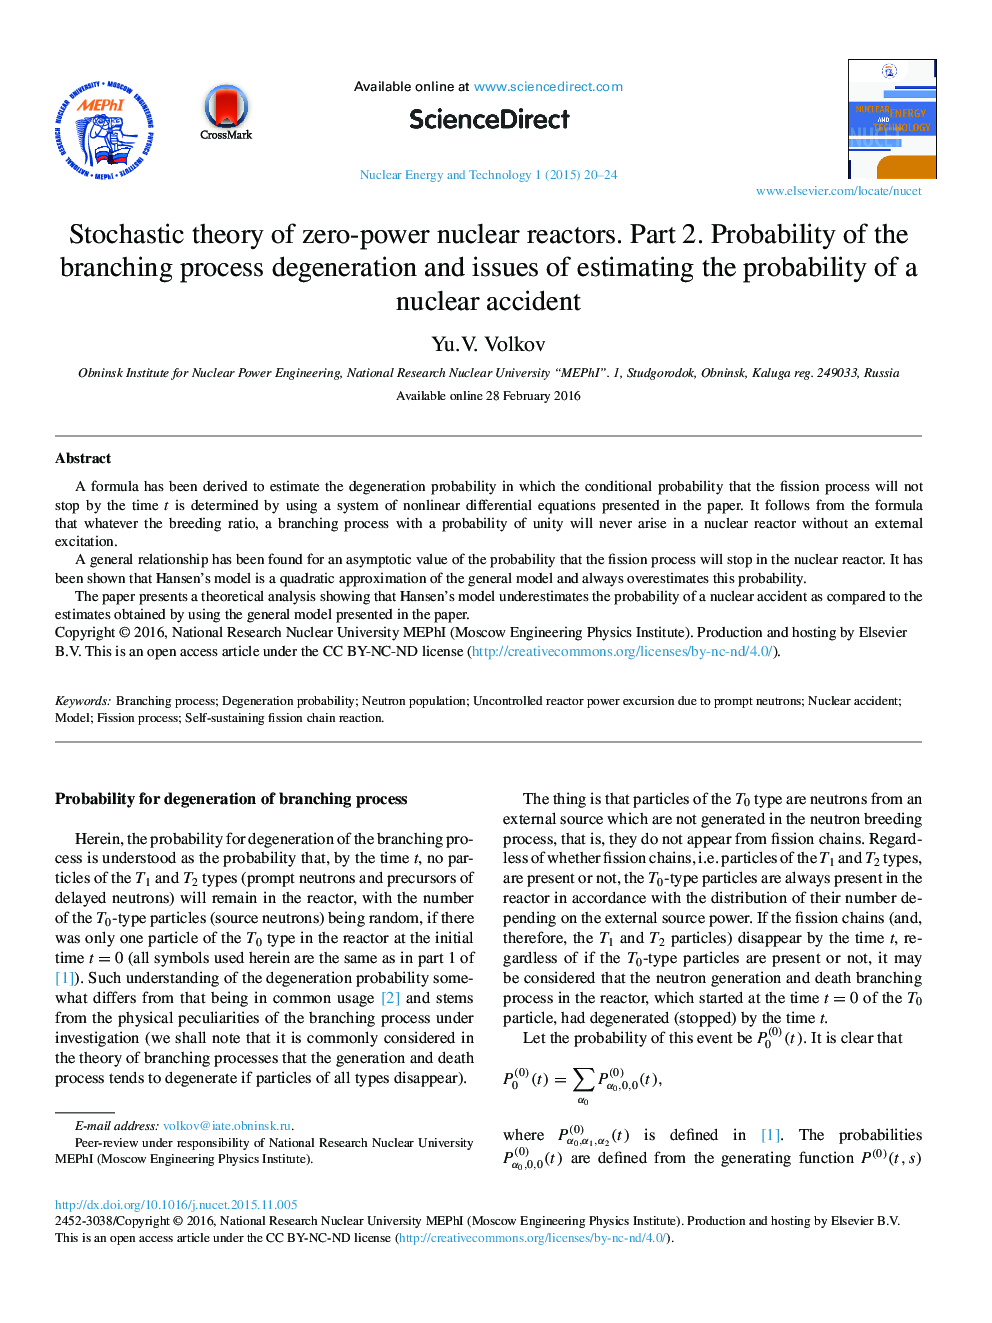 نظریه تصادفی از صفر قدرت راکتورهای هسته ای. قسمت 2. احتمال روند شاخه انحطاط و مسائل مربوط به برآورد احتمال یک حادثه هسته ای